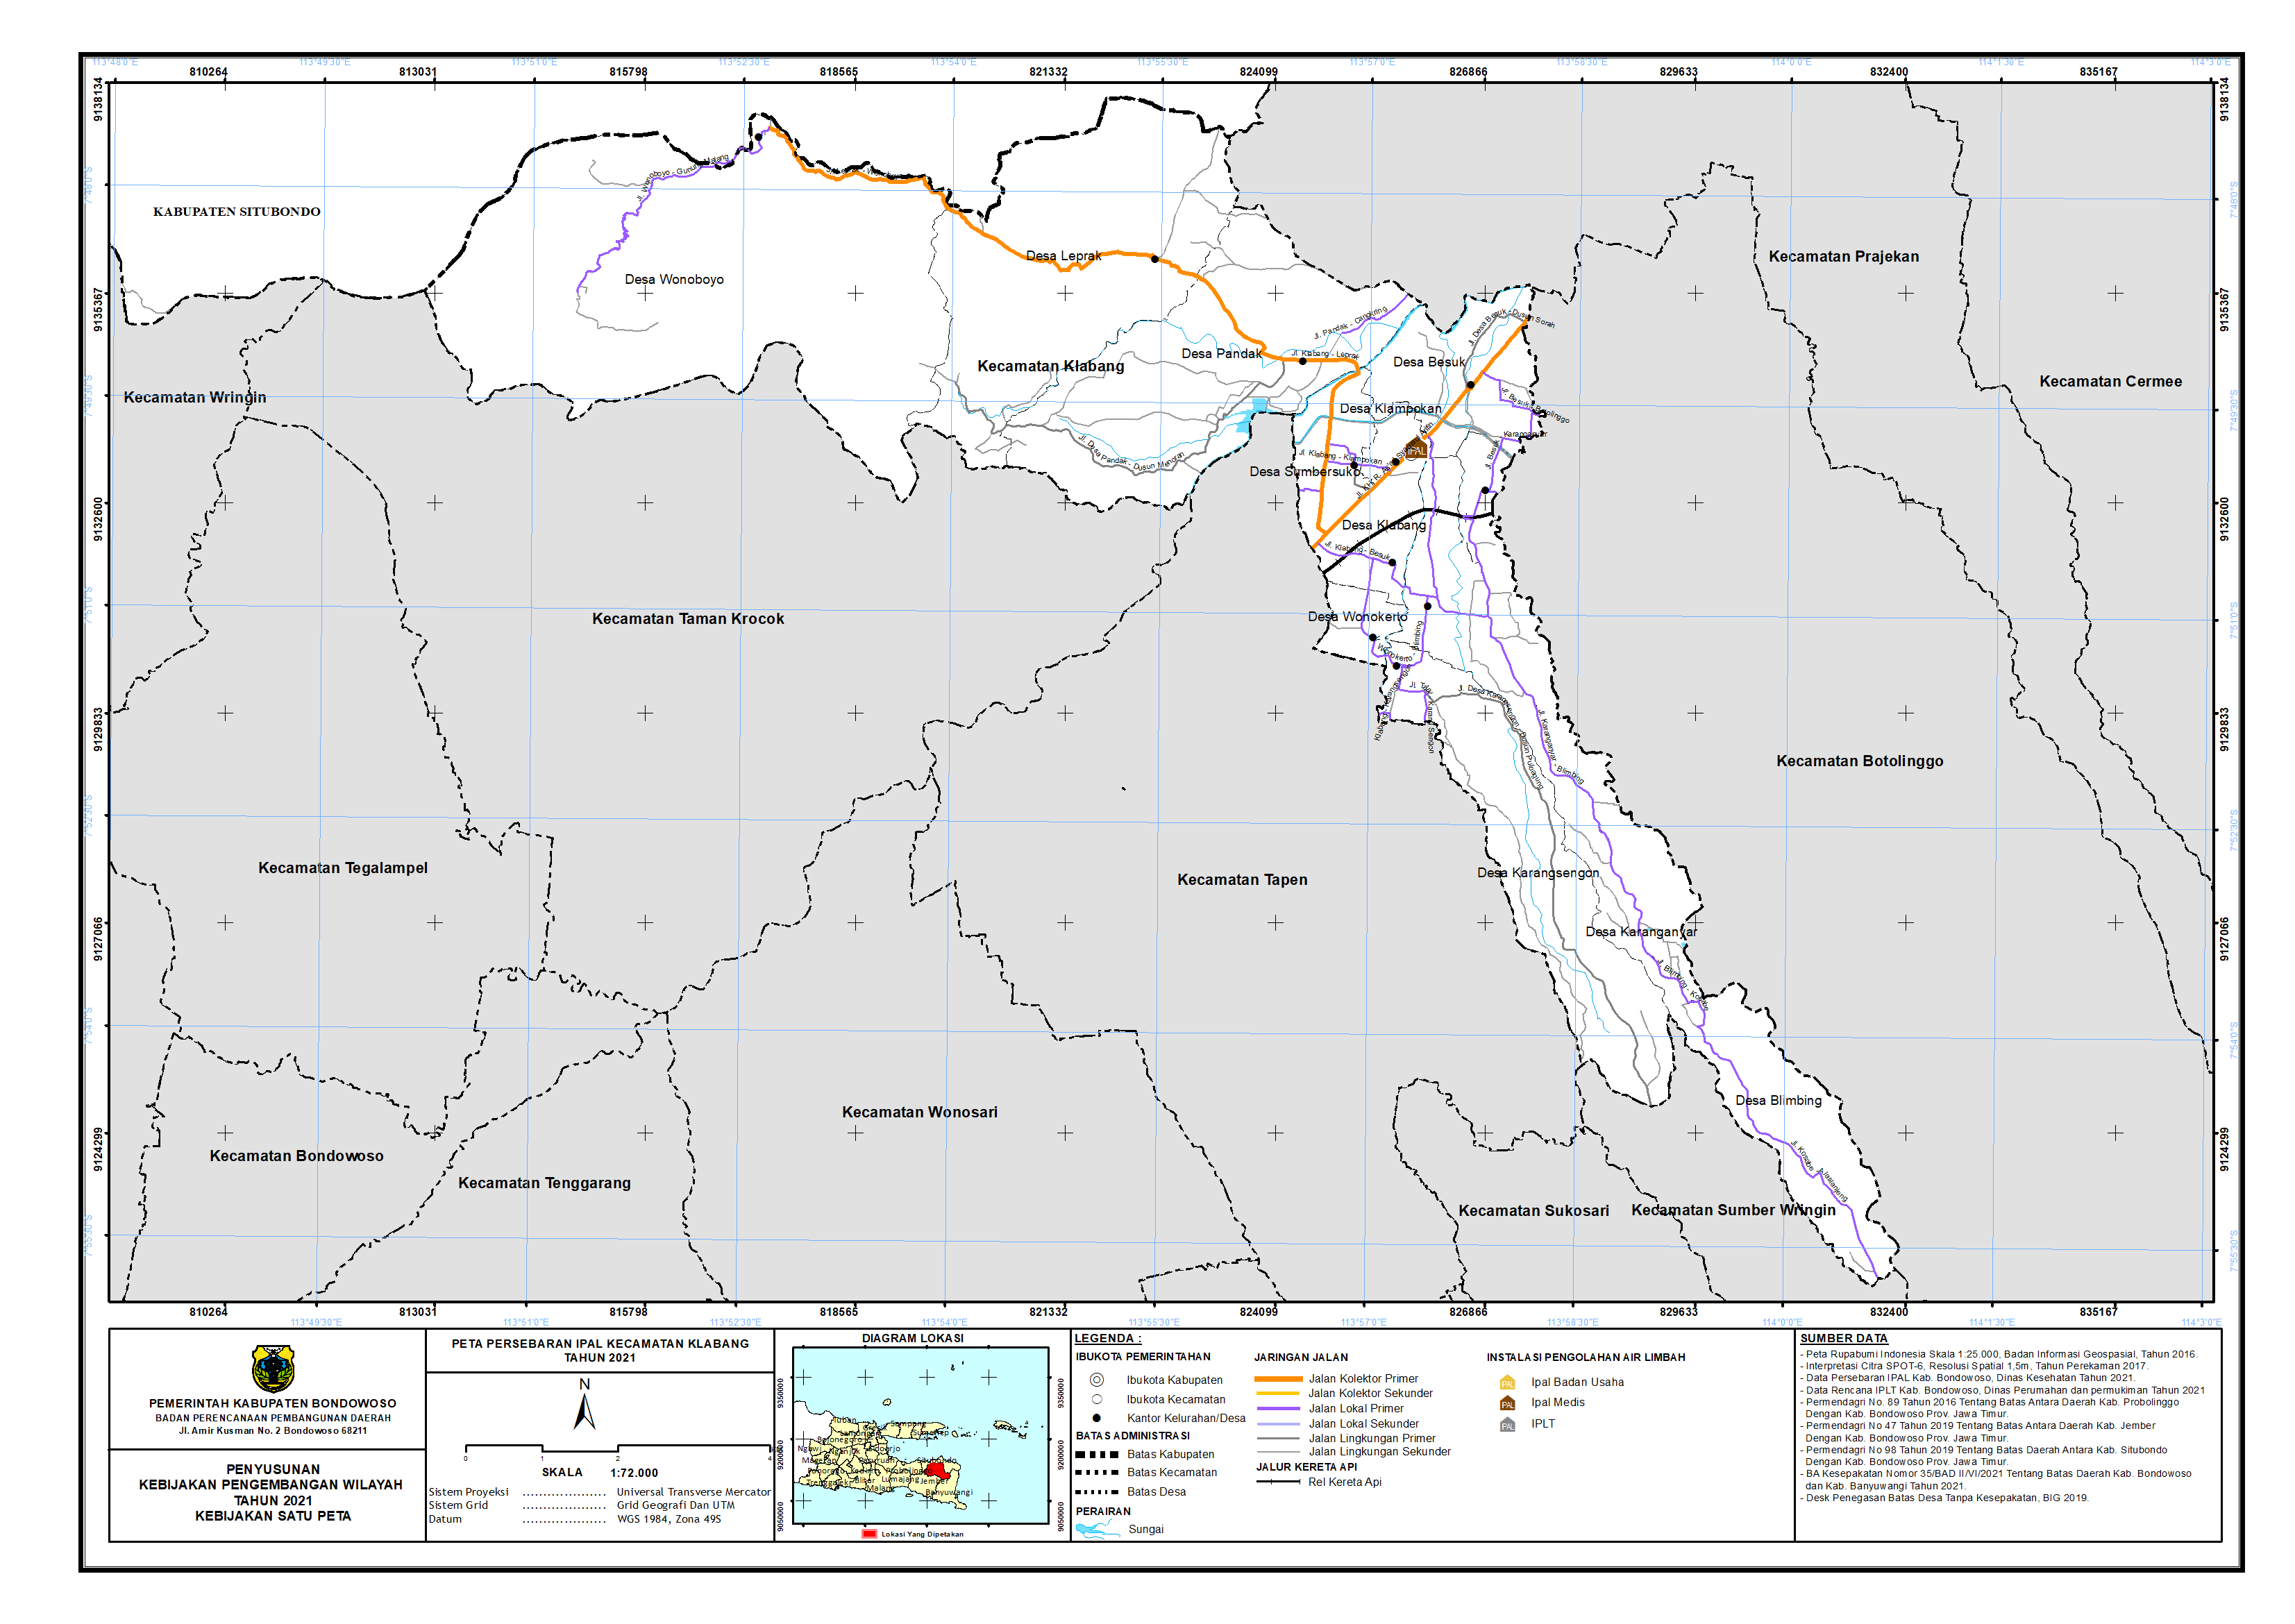 Peta Persebaran IPAL Kecamatan Klabang.png